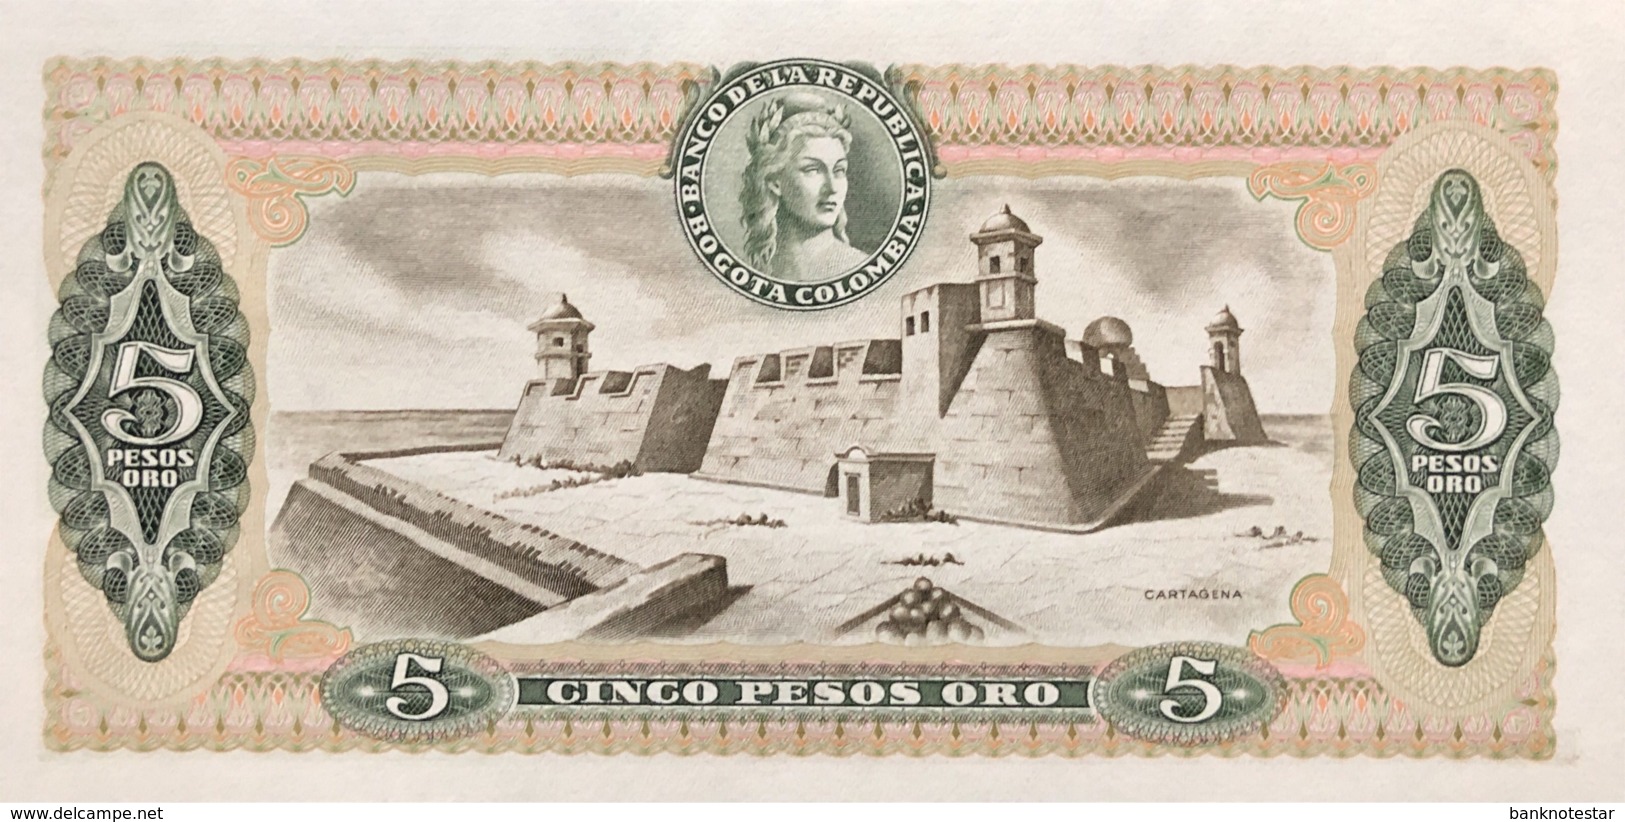 Colombia 5 Pesos Oro, P-406f (1.1.1980) - UNC - Colombia